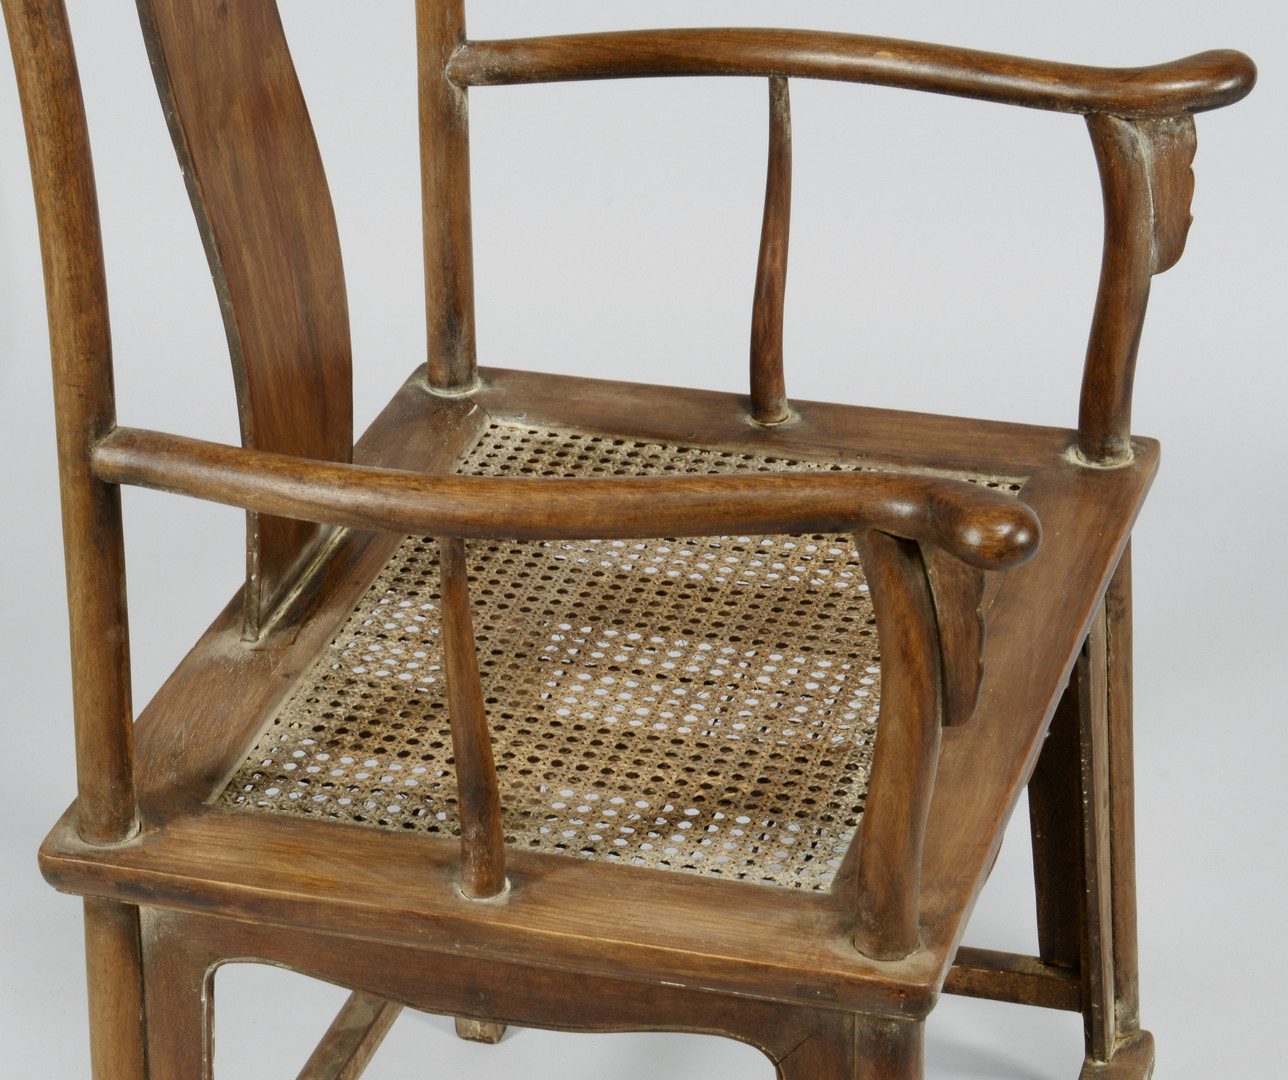 Lot 33: Pair of Chinese Hardwood Yokeback Armchairs, Modern